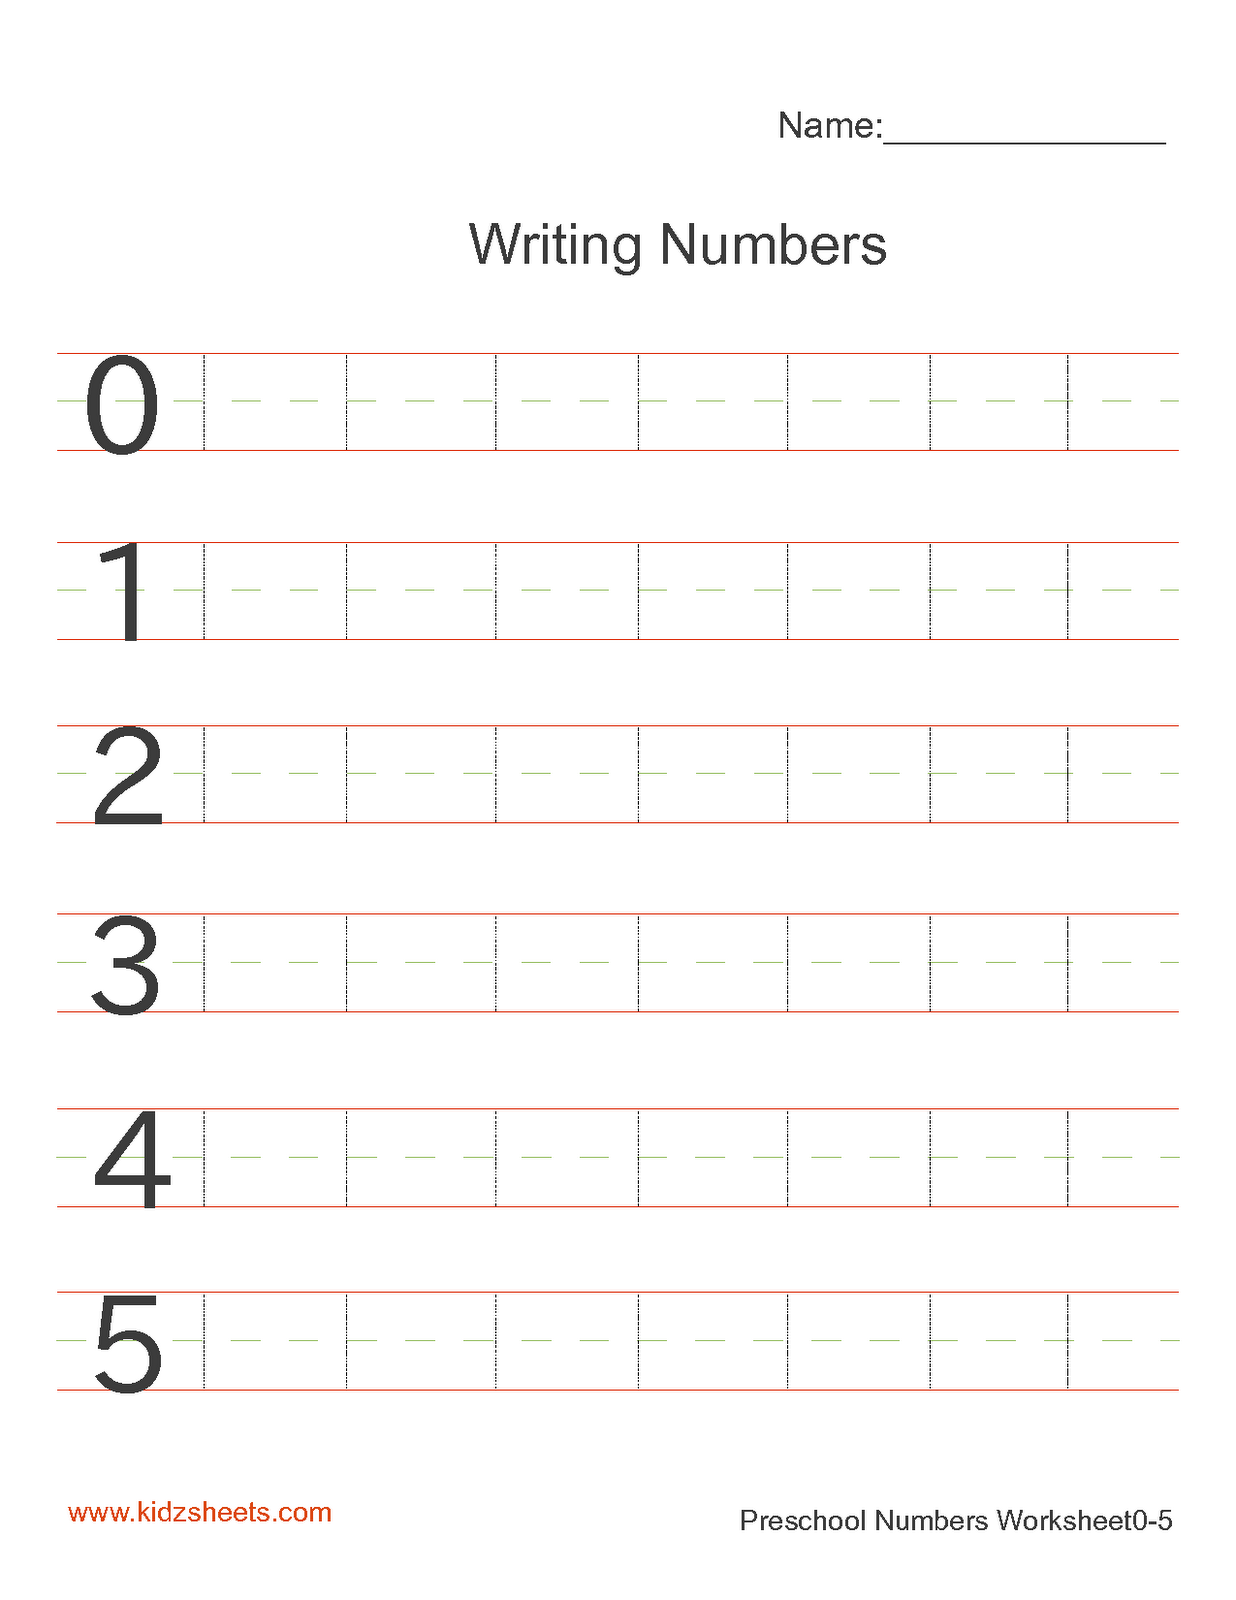 Kidz Worksheets Preschool Writing Numbers Worksheet1 